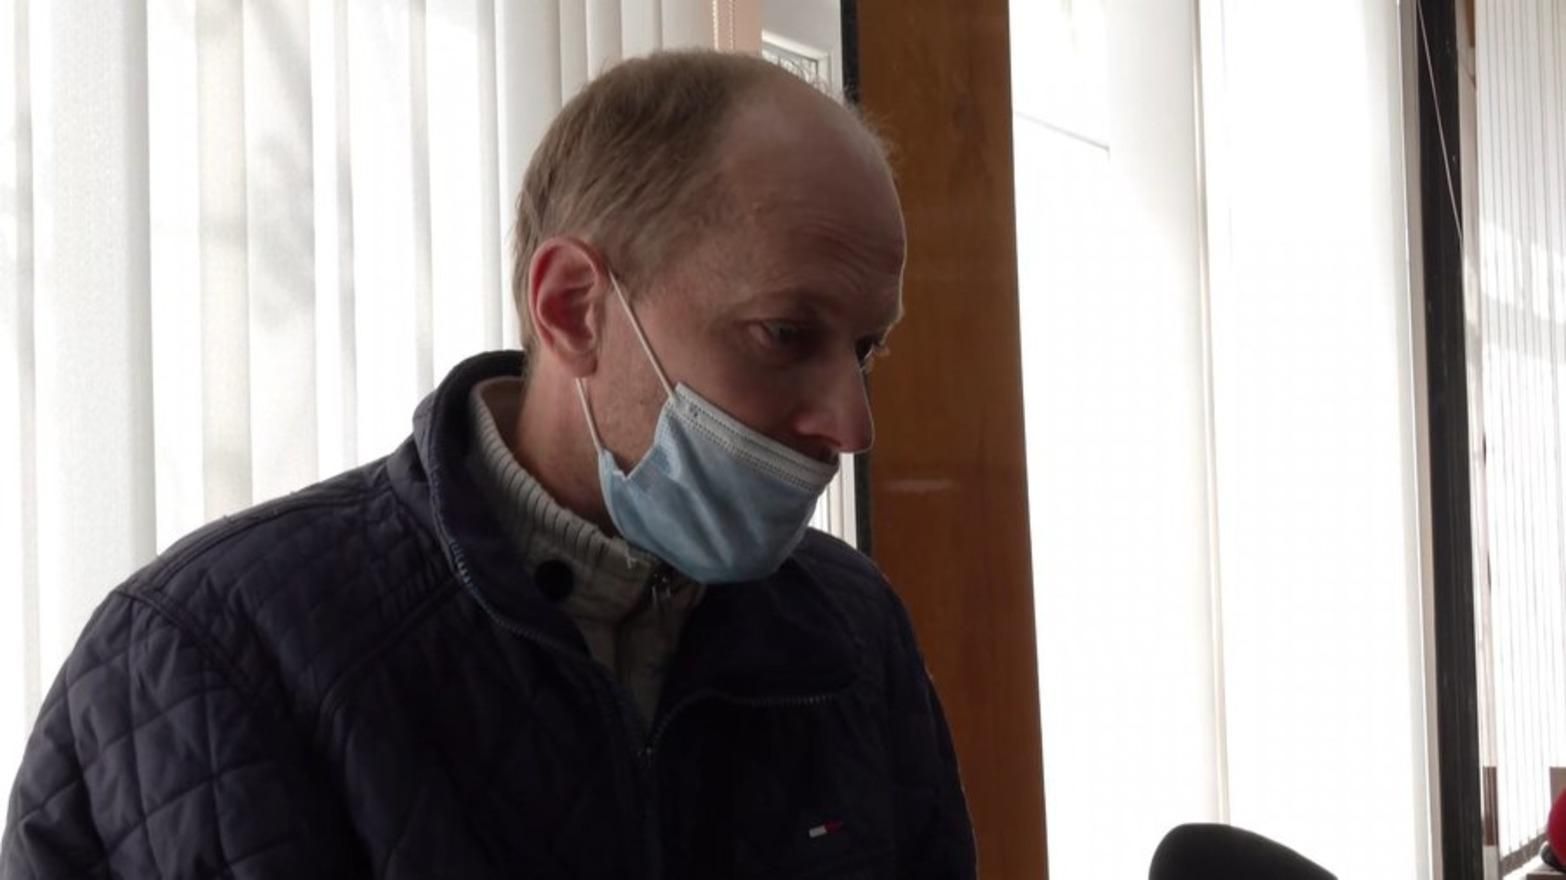 Вбивство поліцейського в Чернігові: батько підозрюваного озвучив свою версію подій - Україна новини - 24 Канал